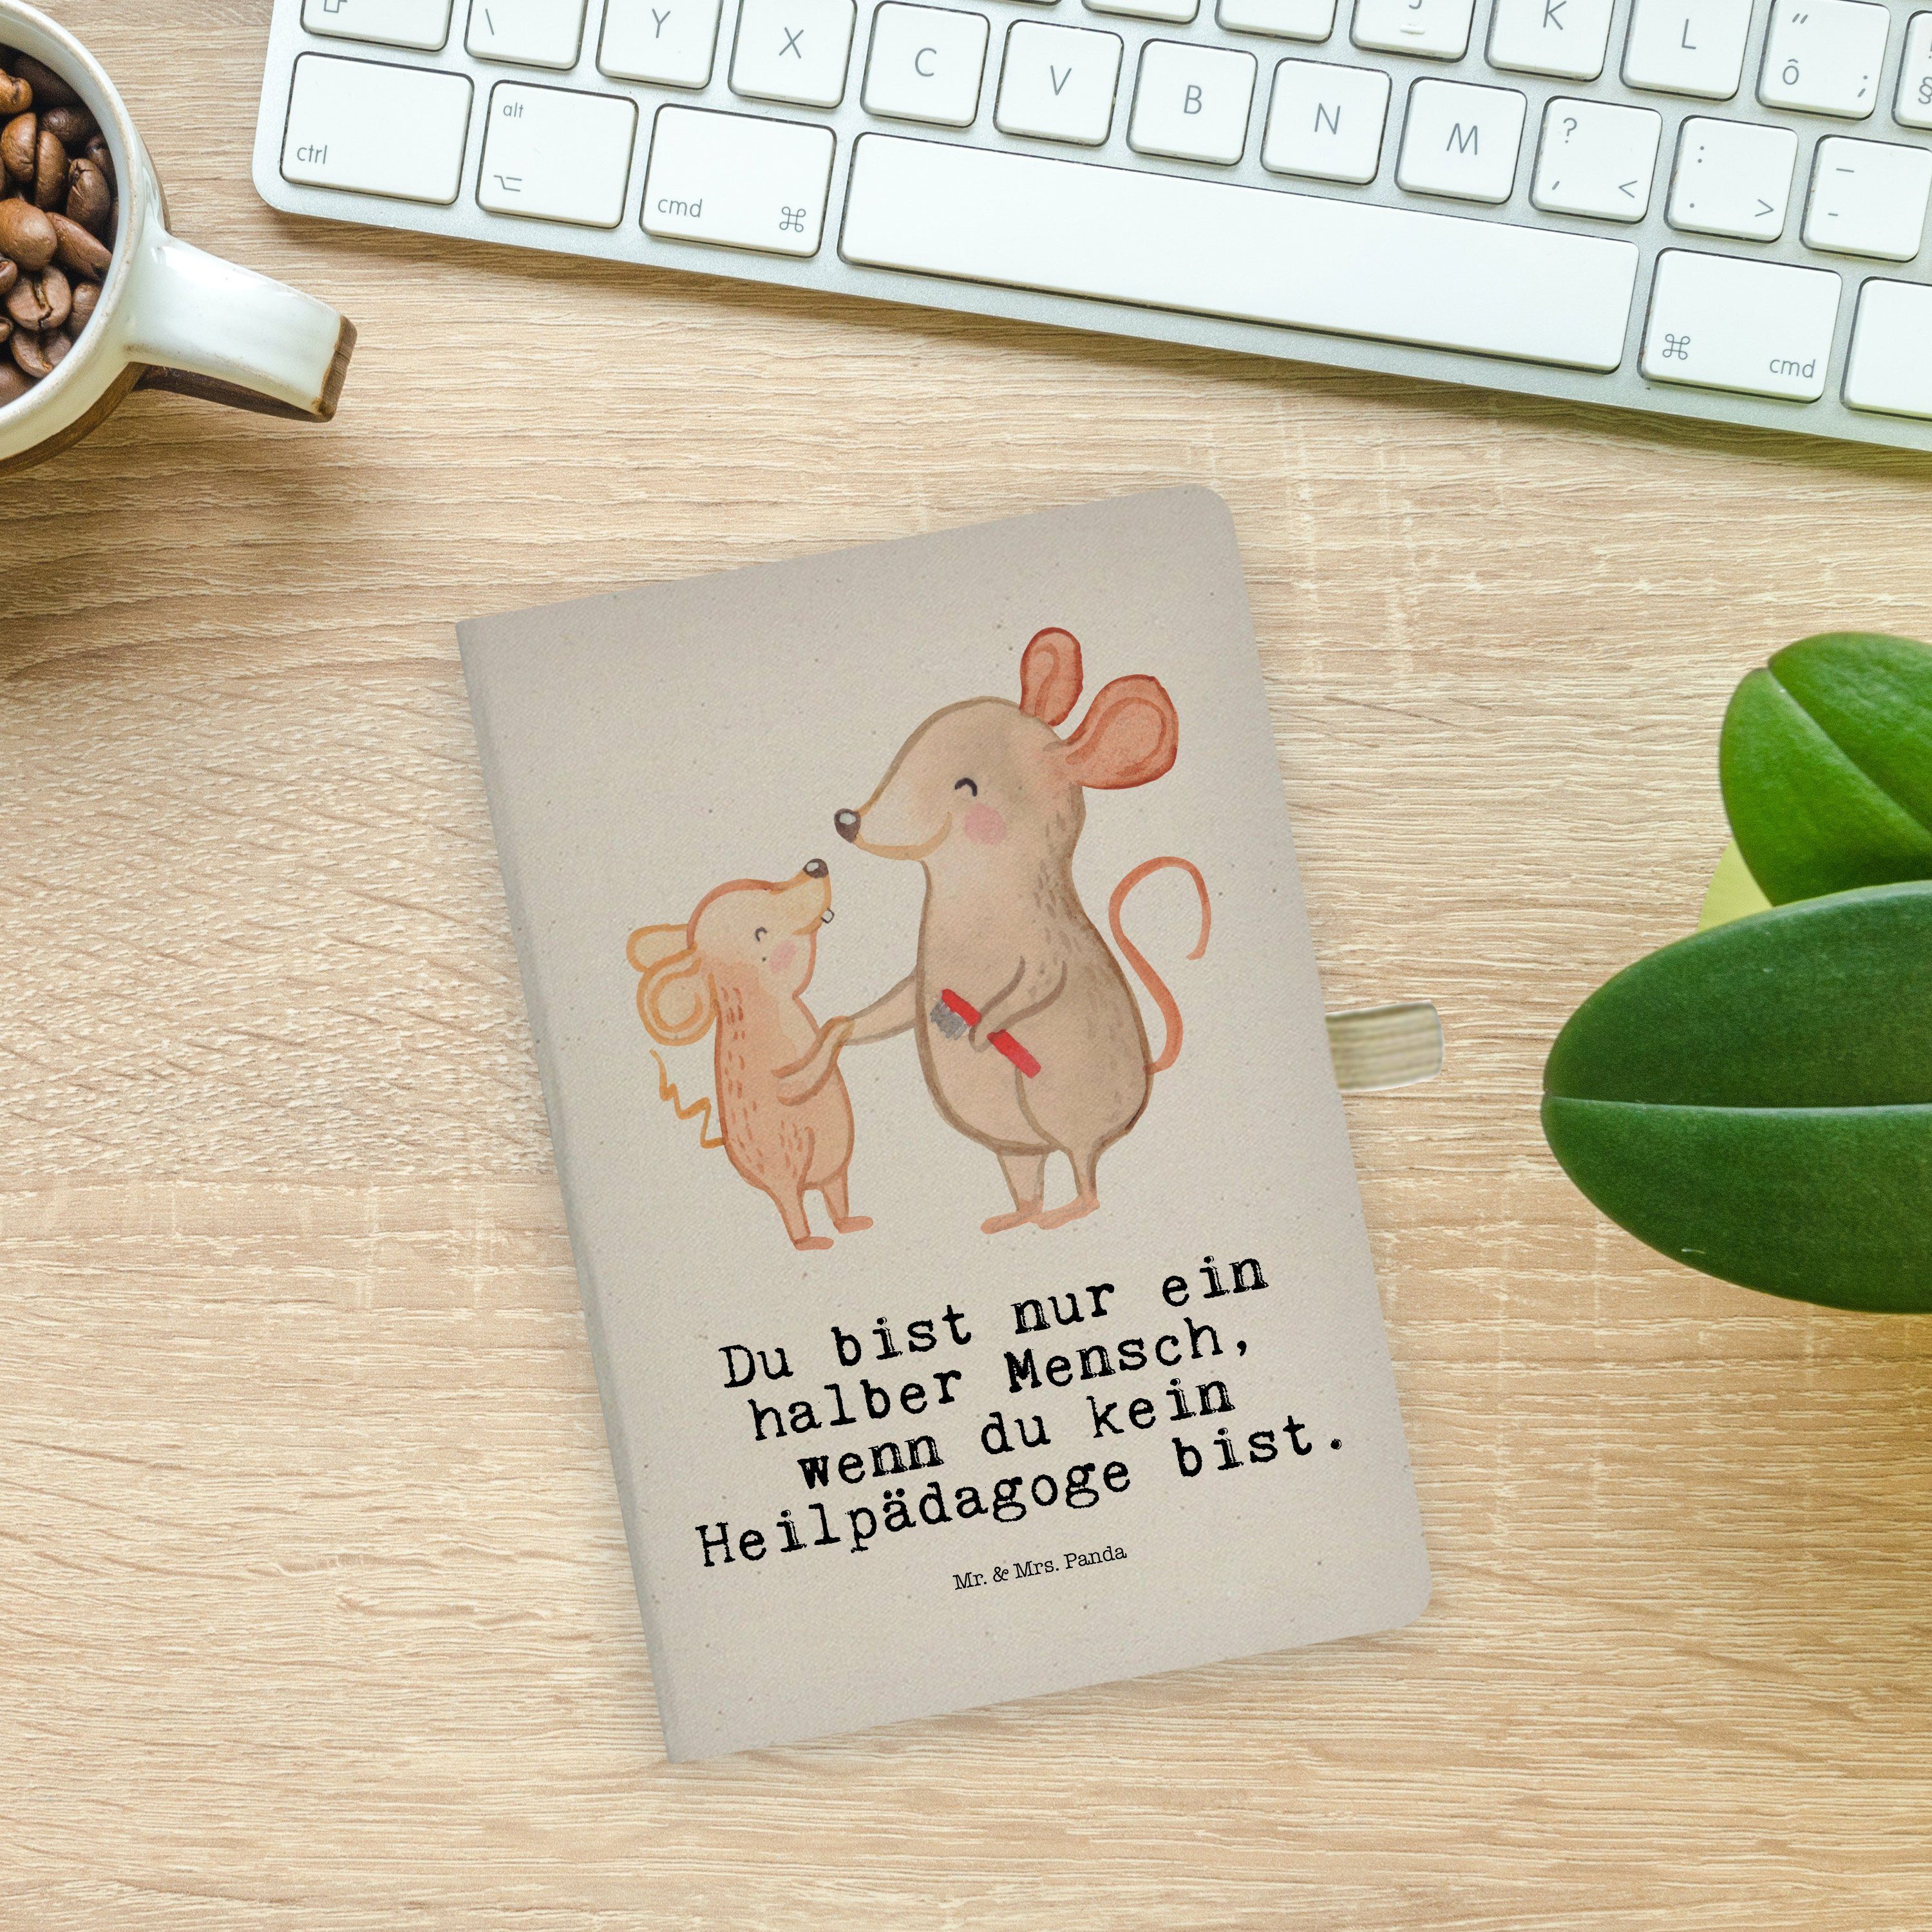 Panda Mrs. Adressbuch, Mrs. Mr. & - Kindergar Geschenk, Notizbuch Mr. Heilpädagoge & mit Herz - Transparent Panda